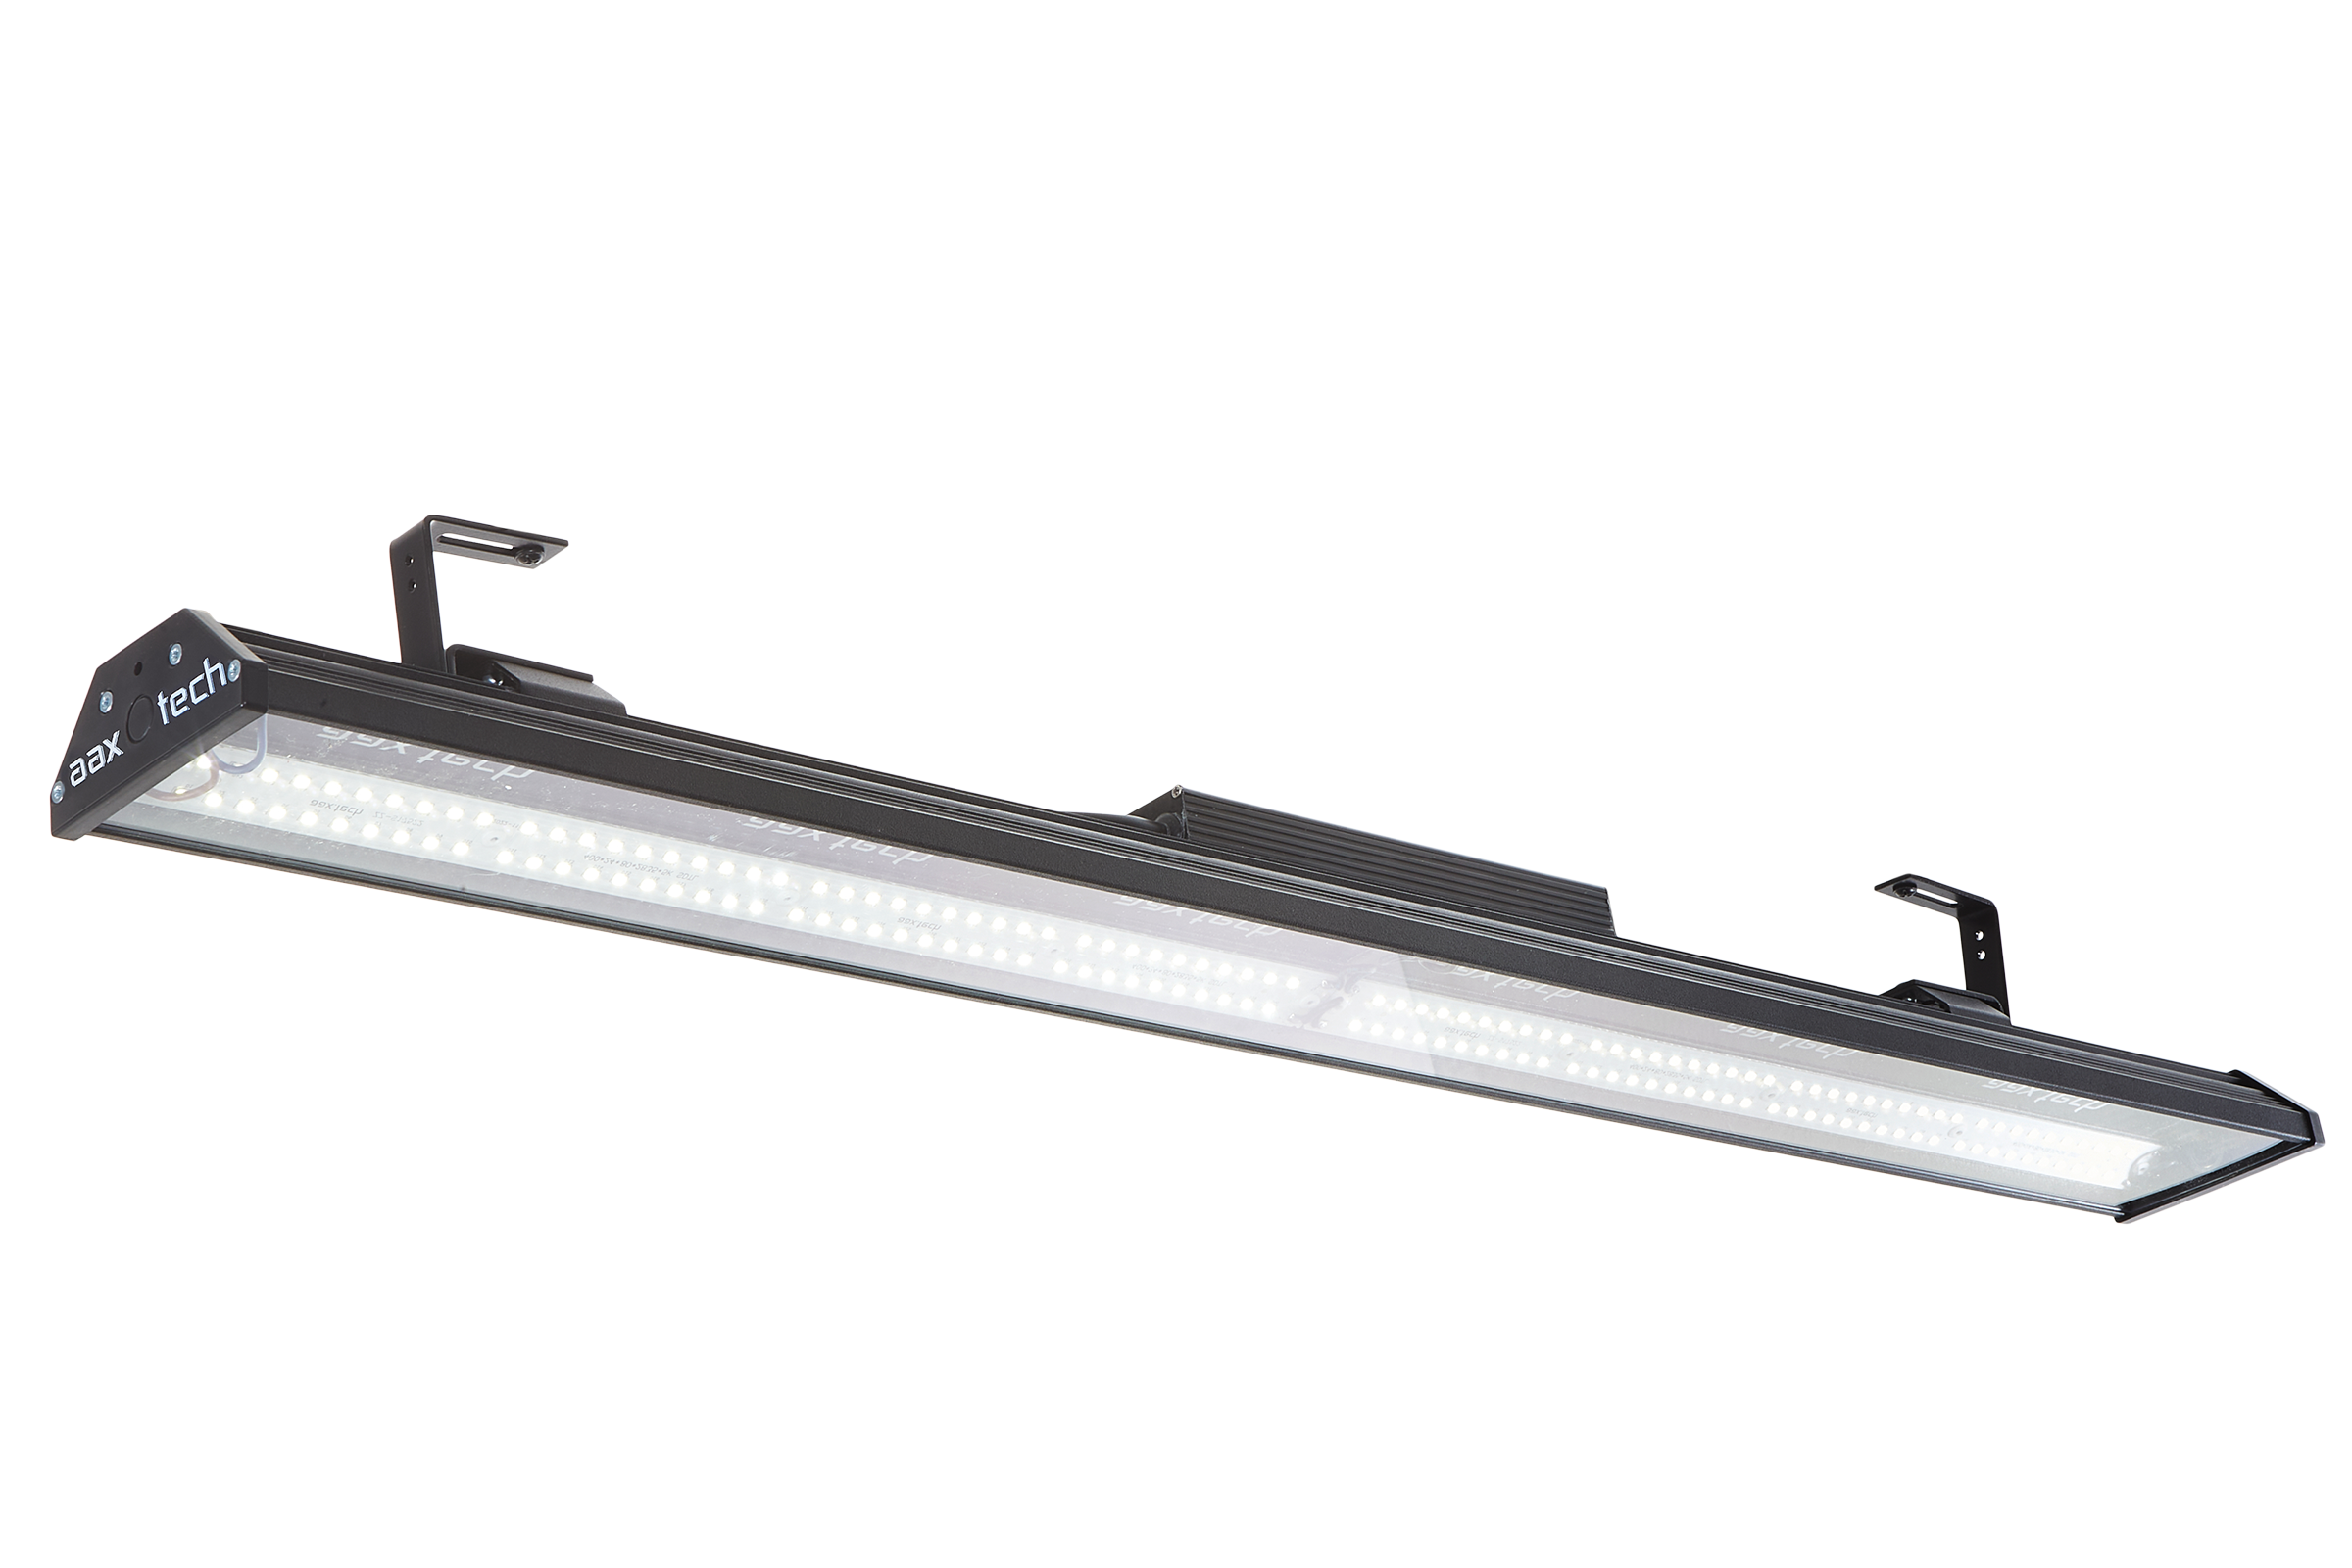 Светильник Сапфир 100W-13700Lm со стационарным креплением крепление для накладной мойки masterprof ис 130189 набор 4 шт